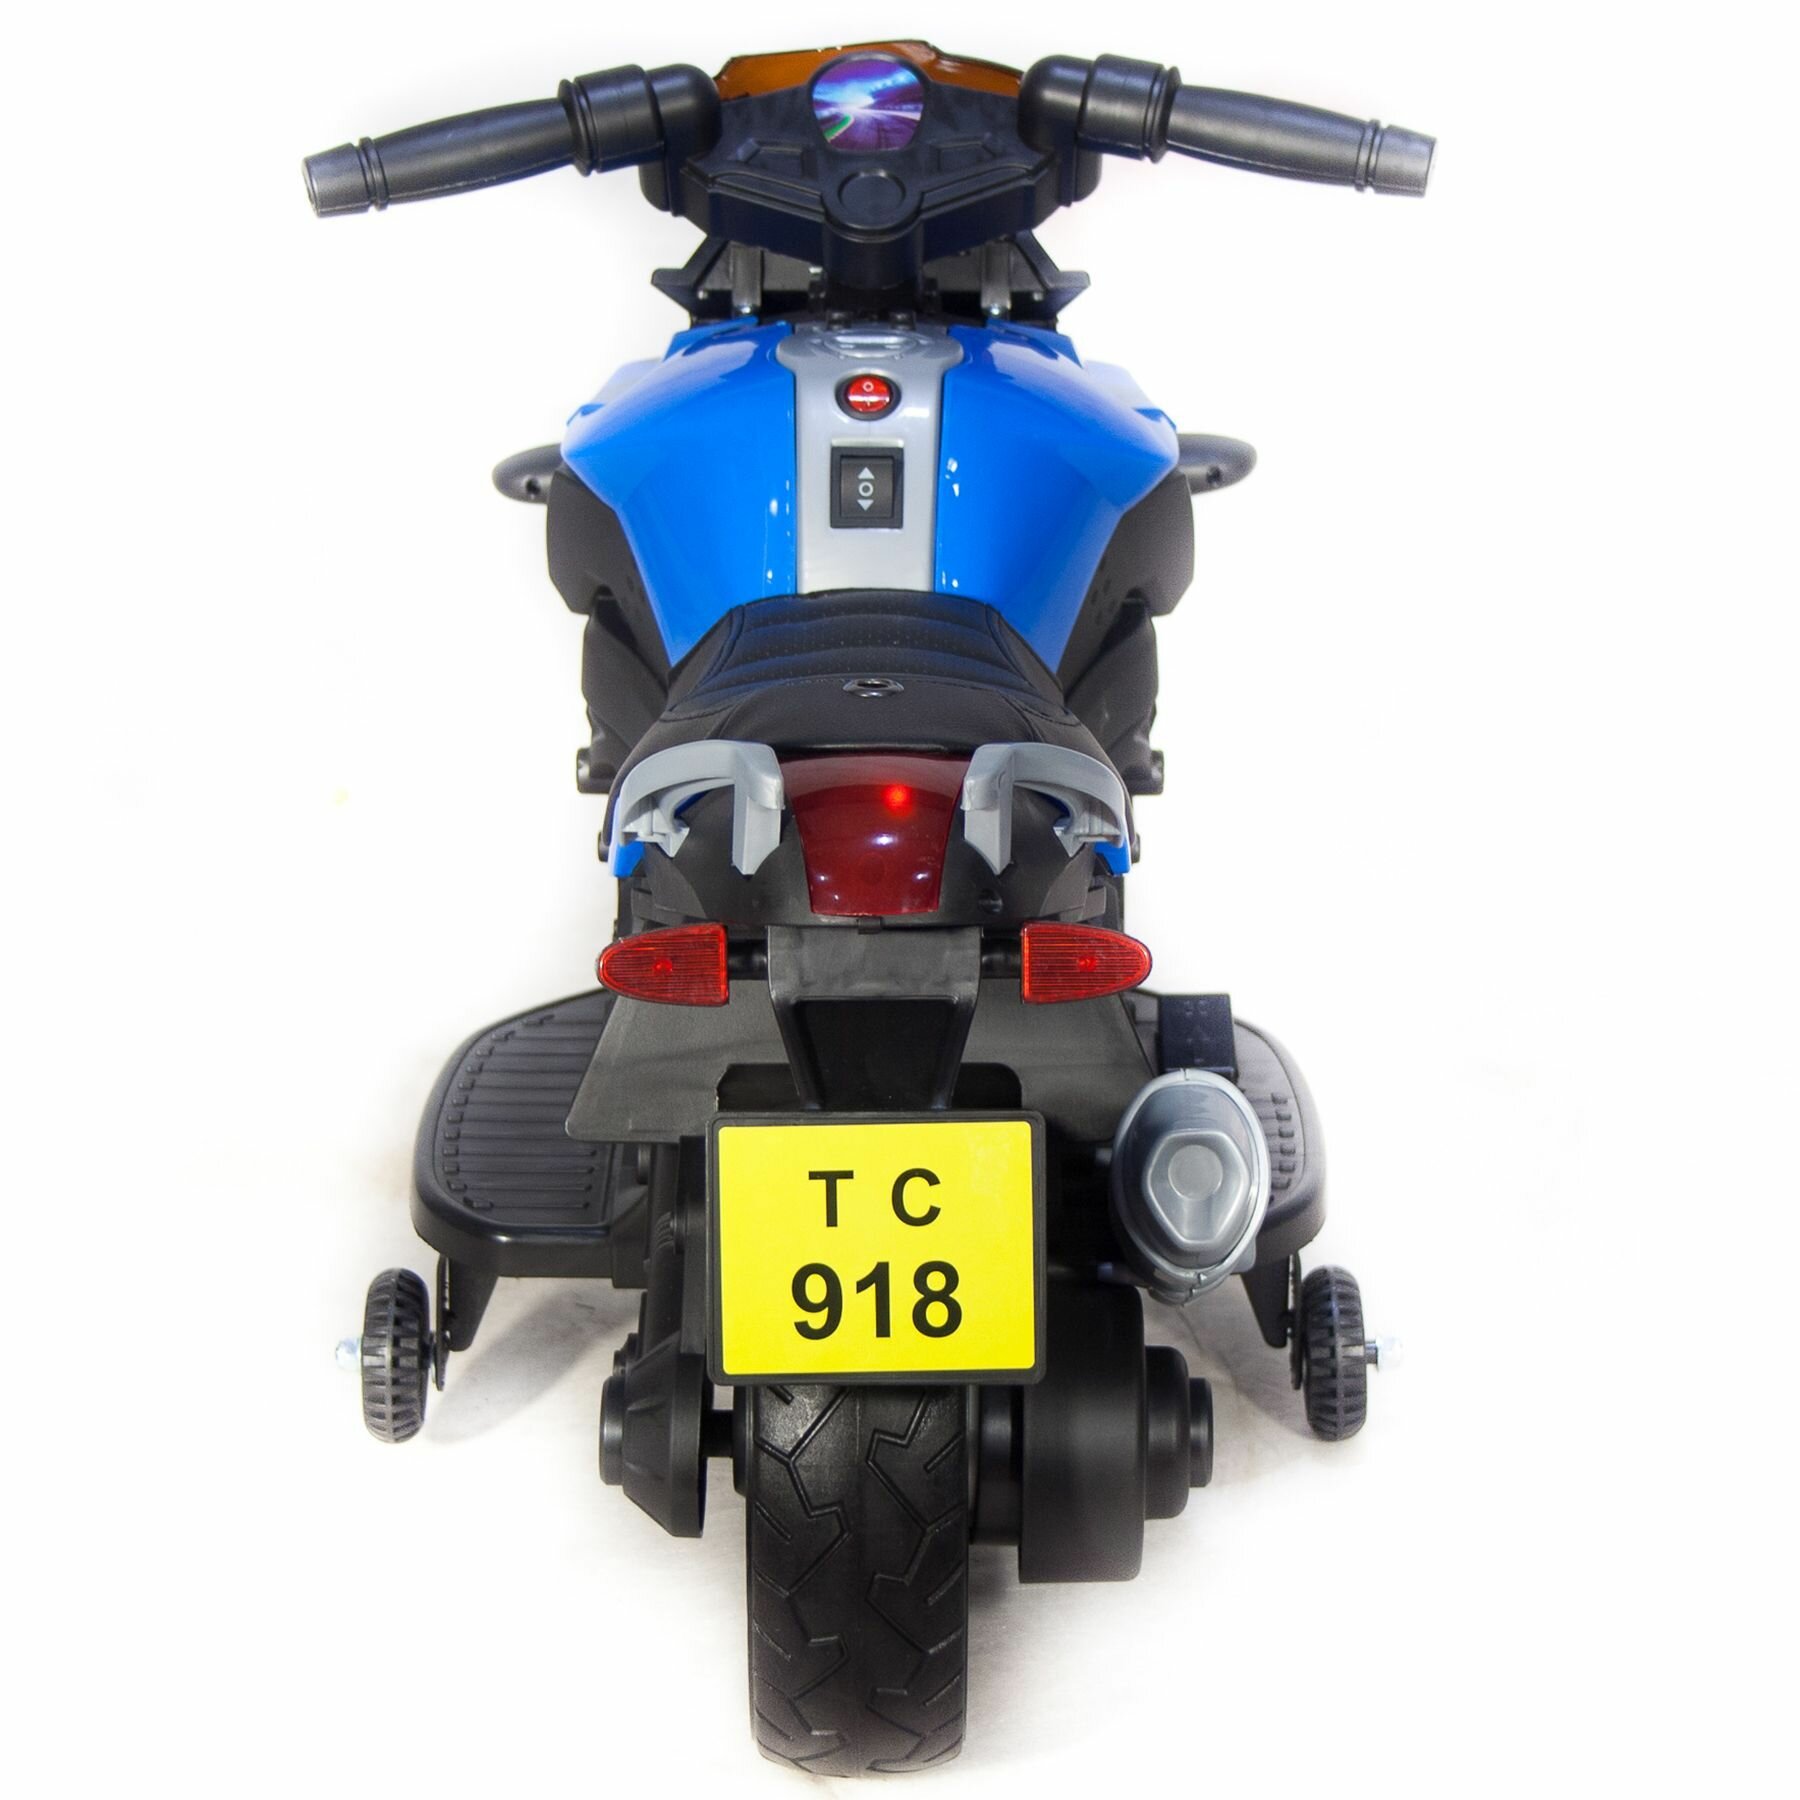 Мотоцикл Minimoto JC918